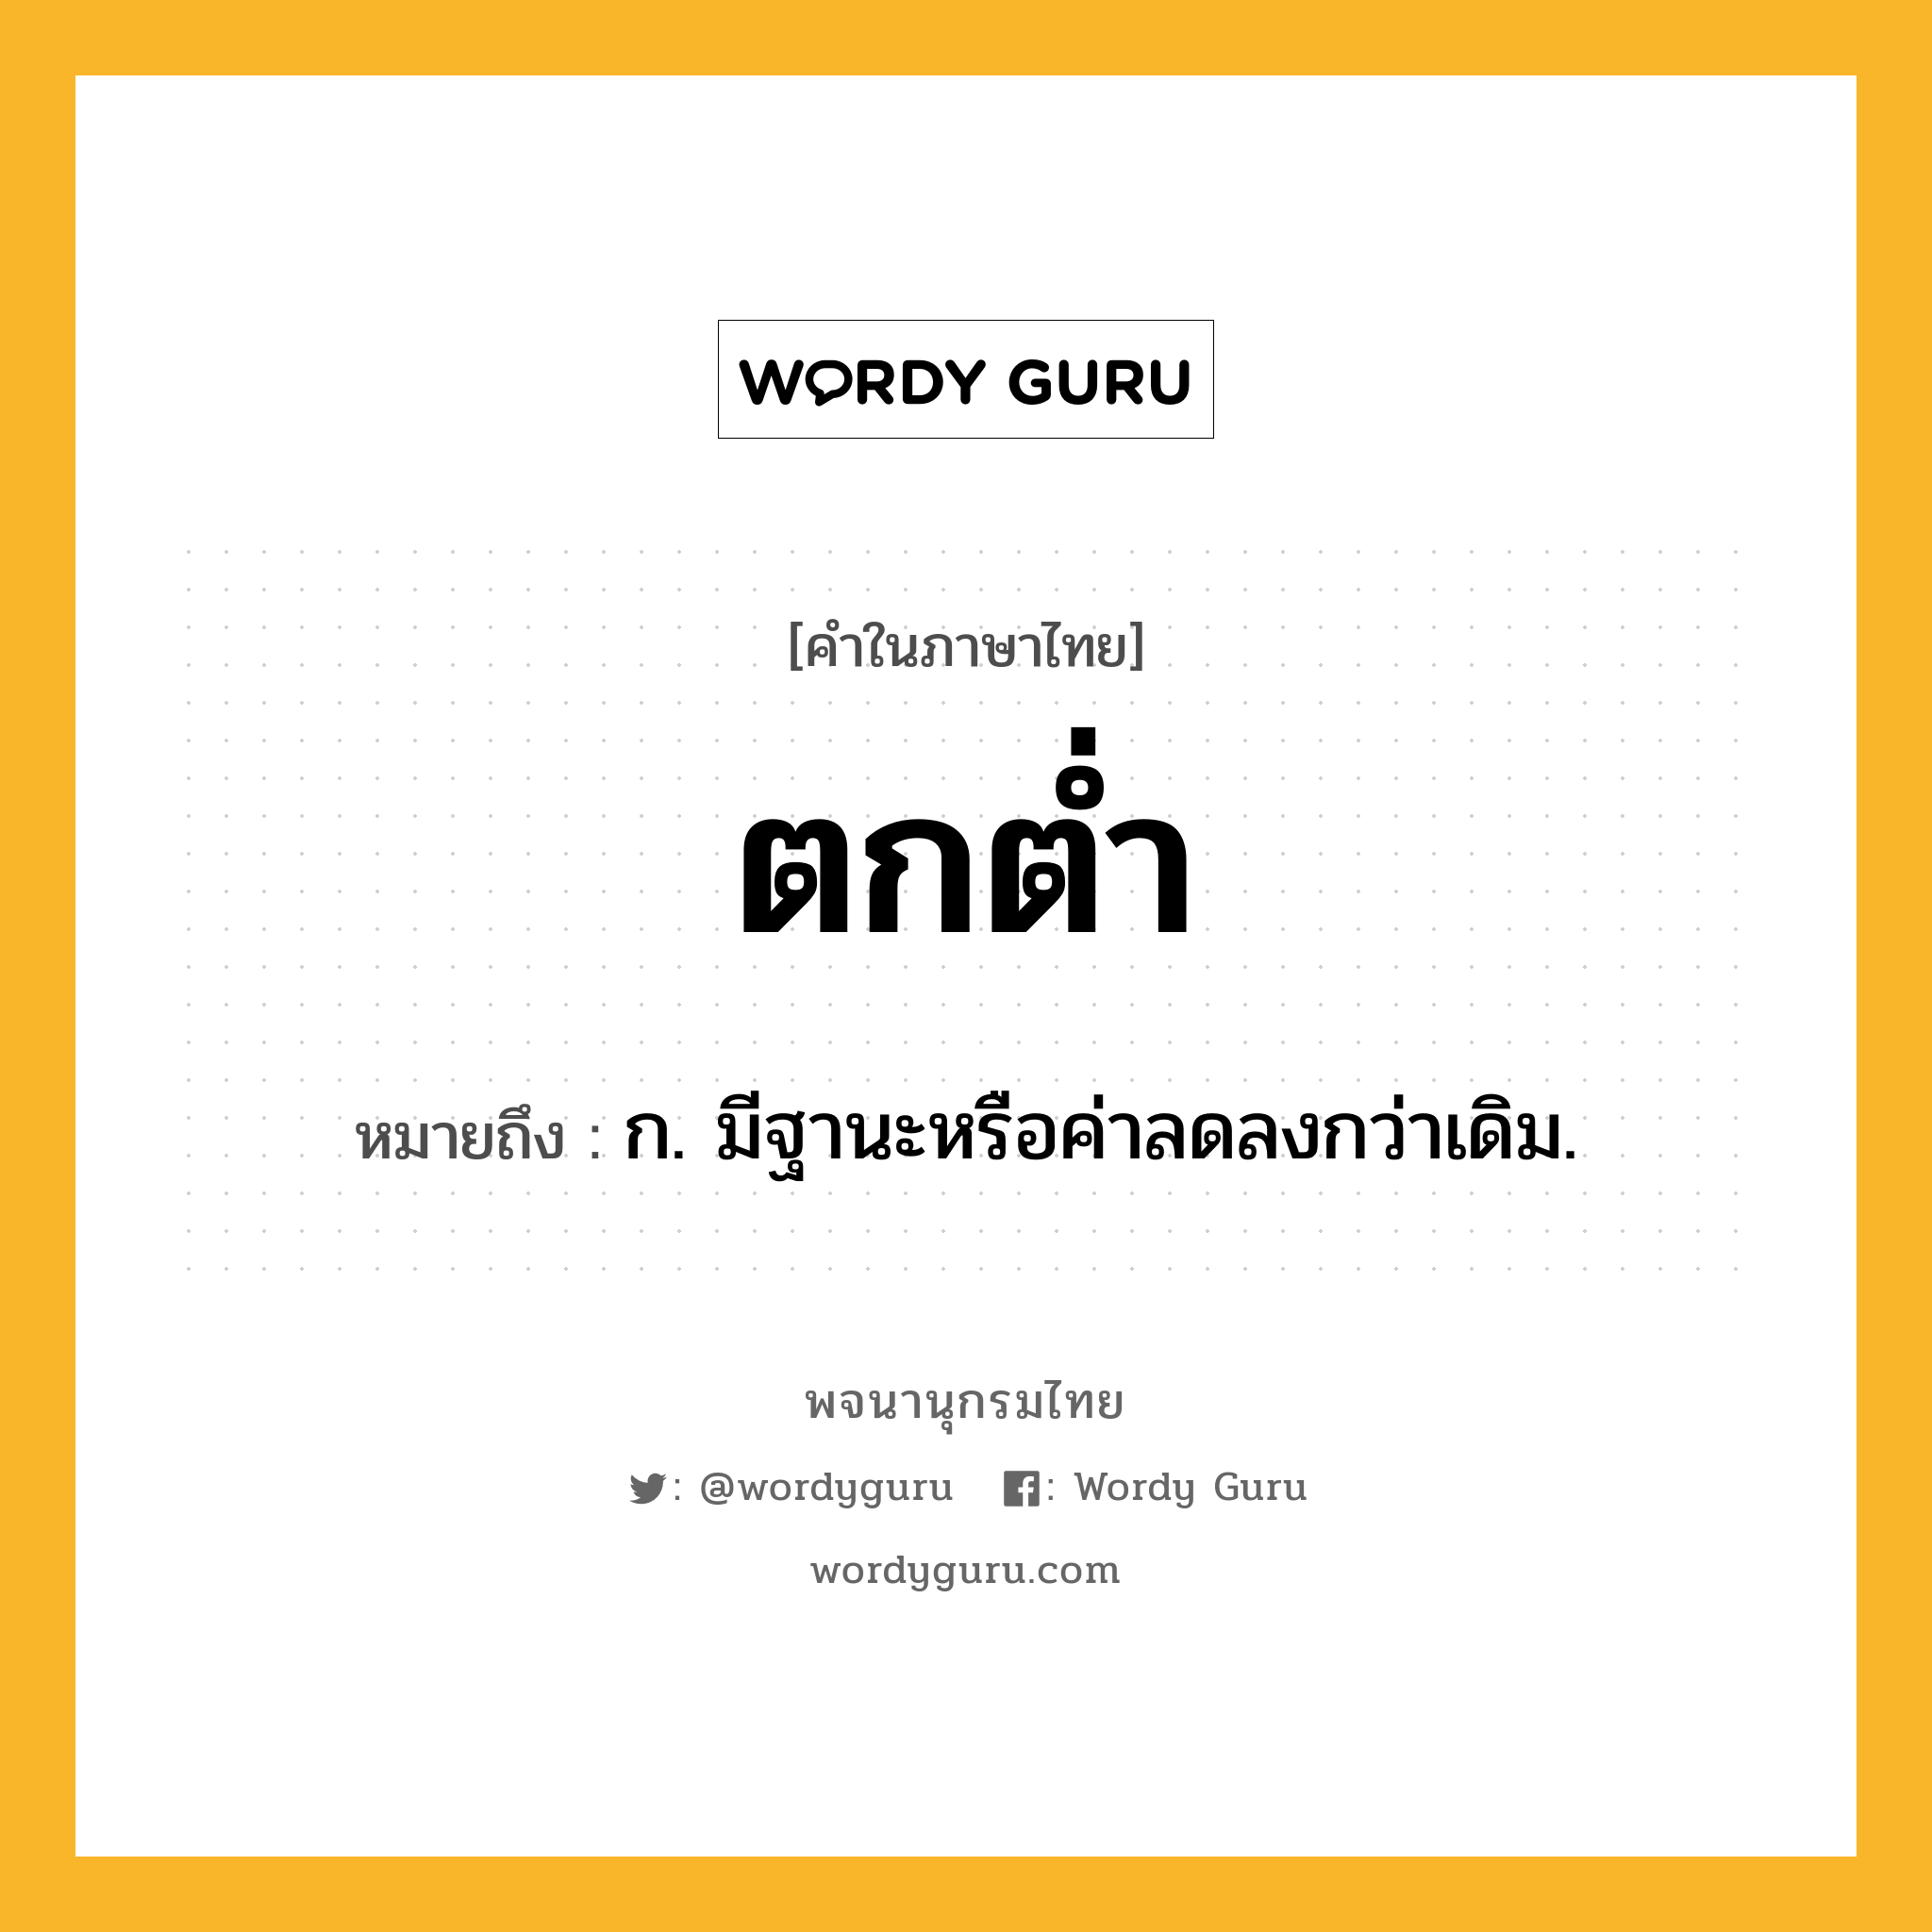 ตกต่ำ ความหมาย หมายถึงอะไร?, คำในภาษาไทย ตกต่ำ หมายถึง ก. มีฐานะหรือค่าลดลงกว่าเดิม.